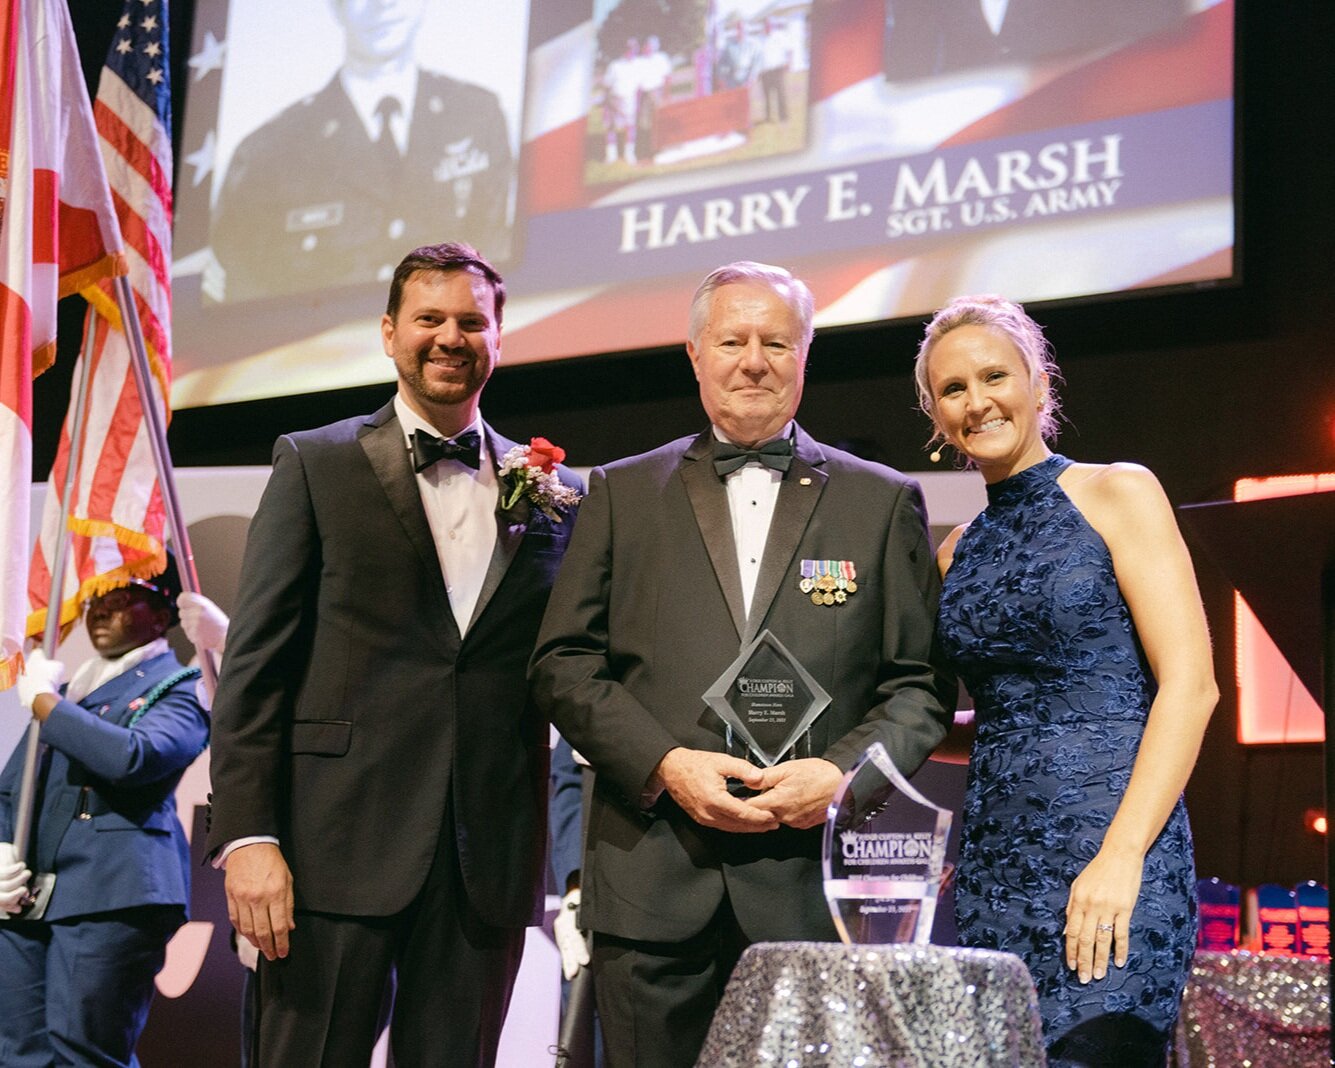 Sgt. Harry E. Marsh